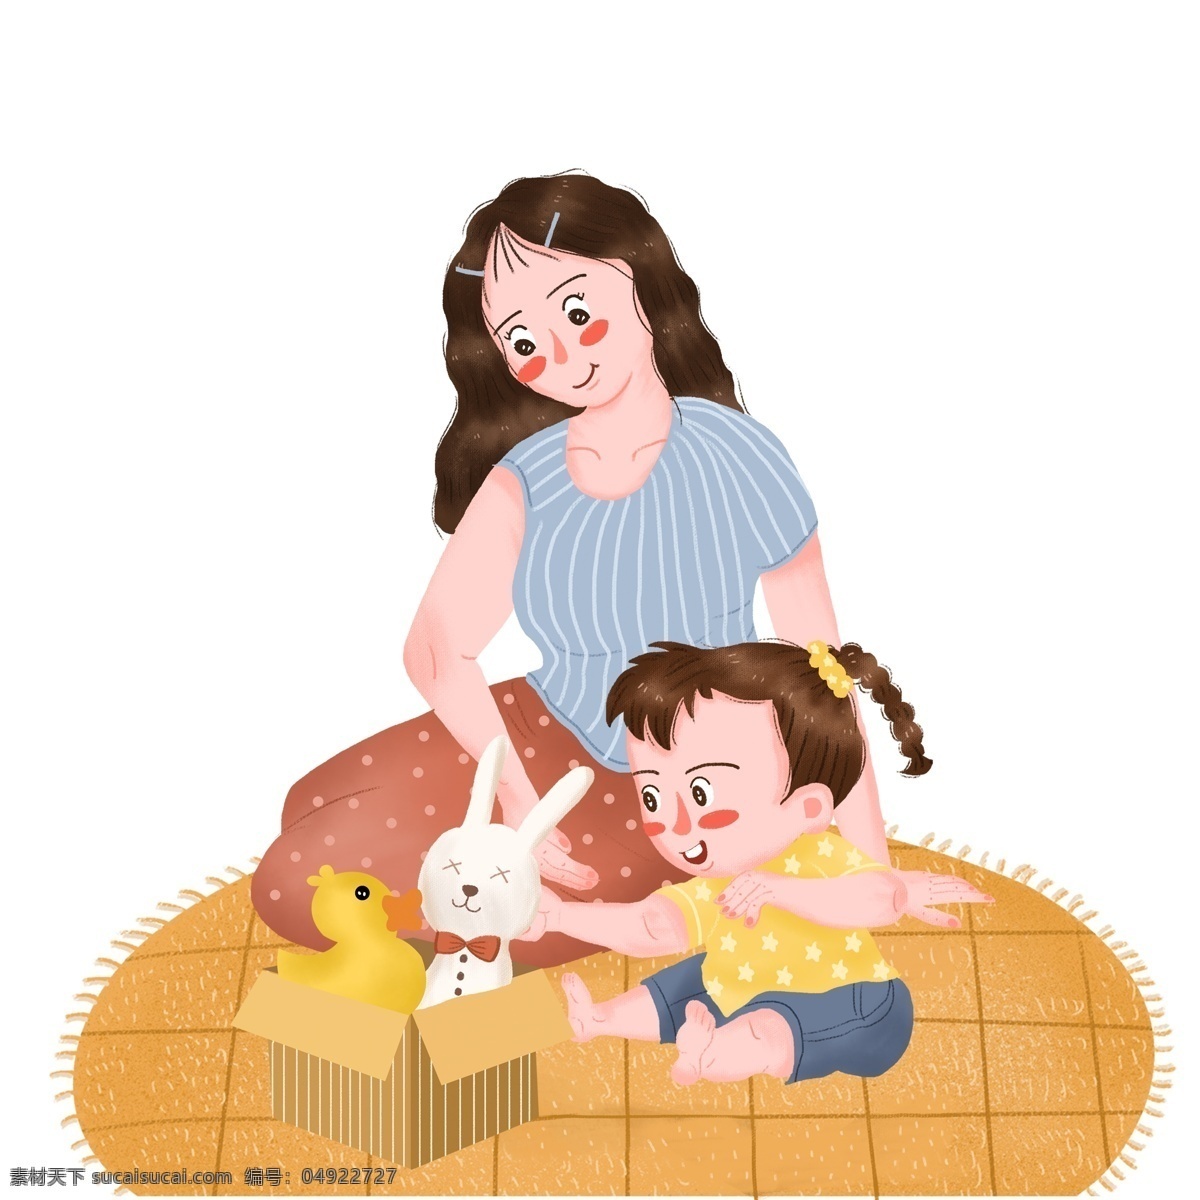 一起 做 游戏 母女 图案 元素 妈妈 妈妈和女儿 小兔子 玩具 母亲节人物 人物元素 母亲节 设计元素 手绘 手绘元素 psd元素 免抠元素